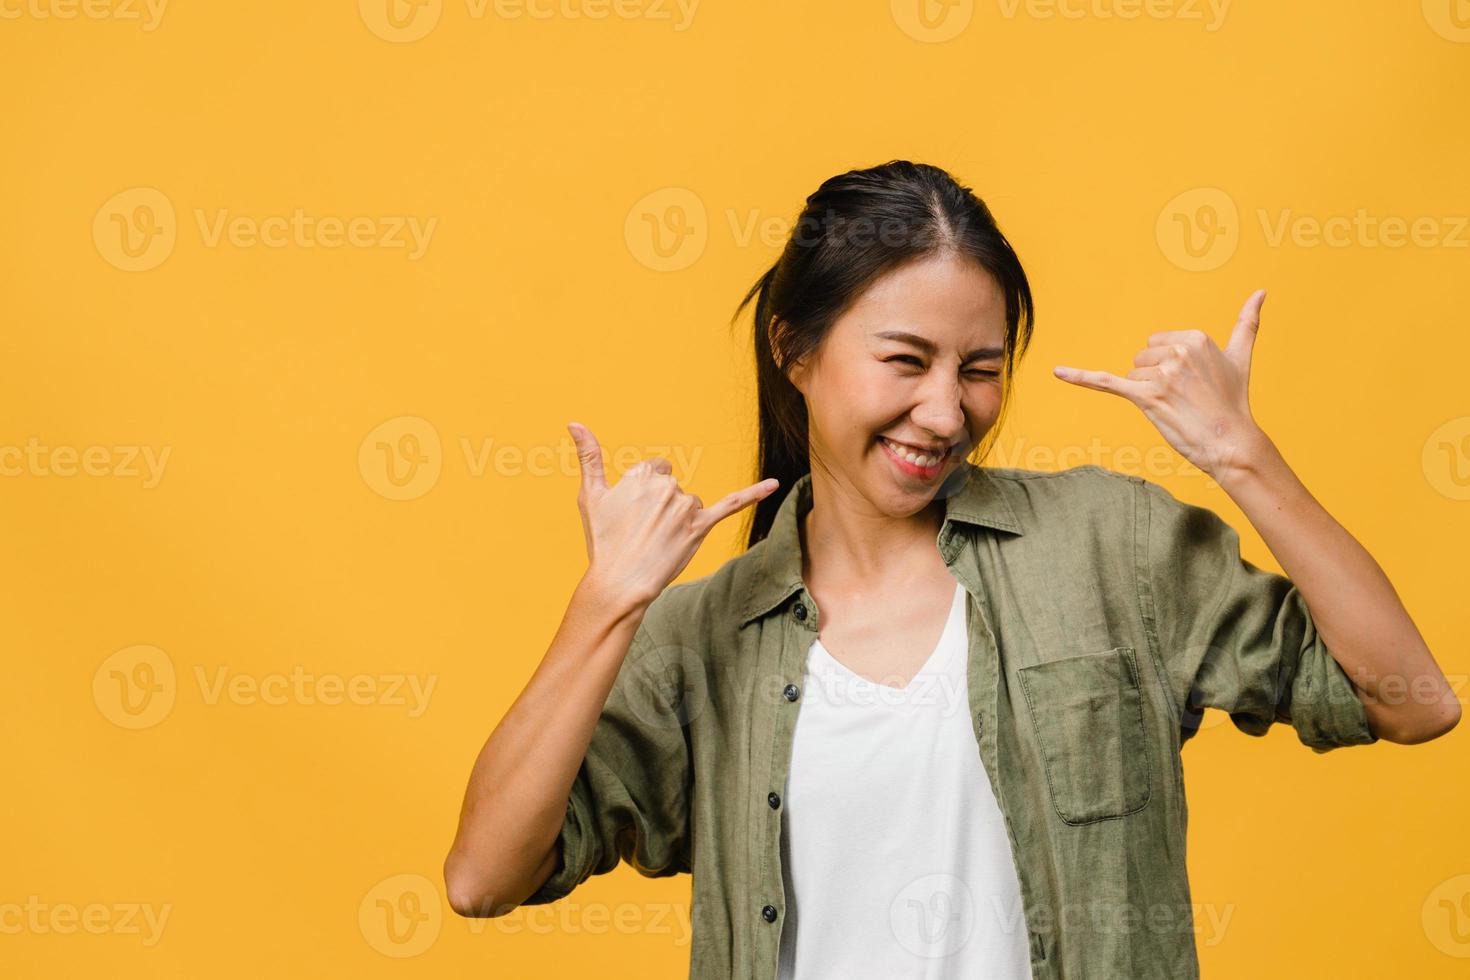 jonge azië dame met positieve uitdrukking, breed glimlachen, gekleed in casual kleding en camera kijken over gele achtergrond. gelukkige schattige blije vrouw verheugt zich over succes. gezichtsuitdrukking concept. foto